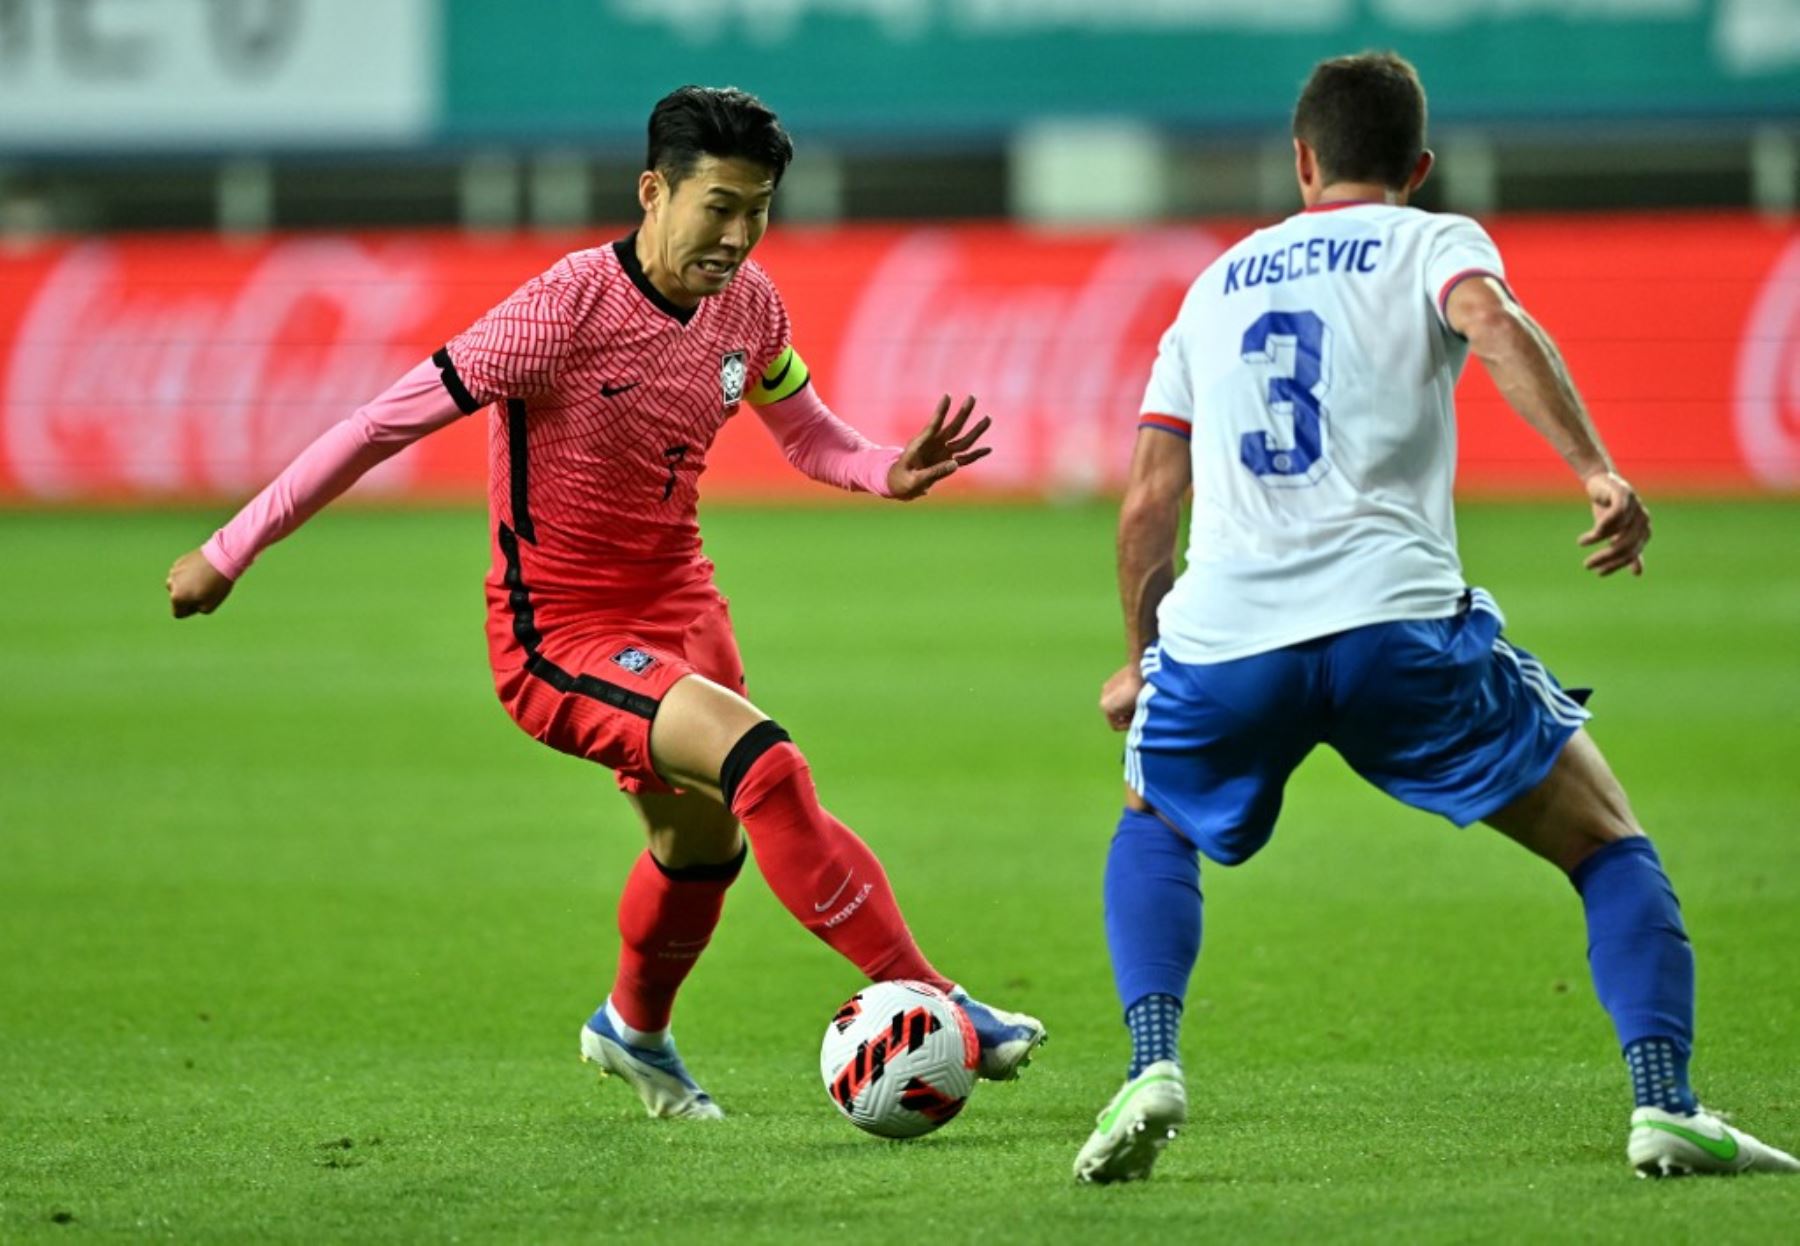 Corea del Sur se recuperó de la goleada propinada por Brasil al derrotar a los chilenos